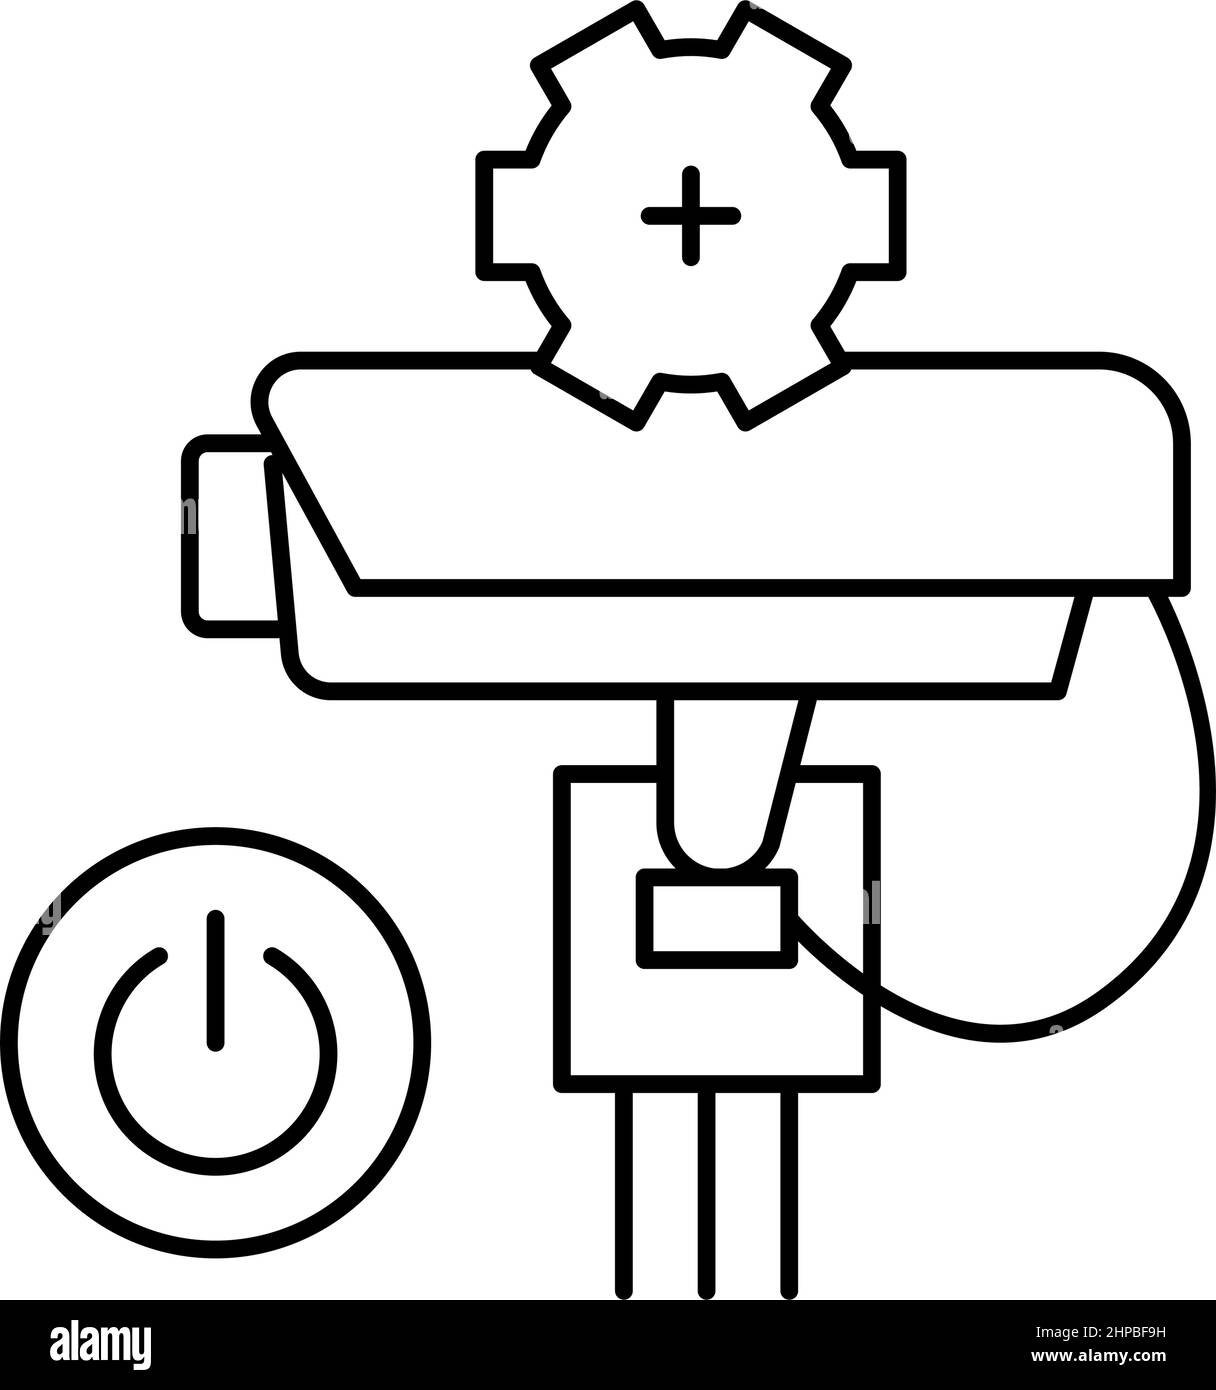 immagine vettoriale dell'icona della linea di collegamento elettrico Illustrazione Vettoriale